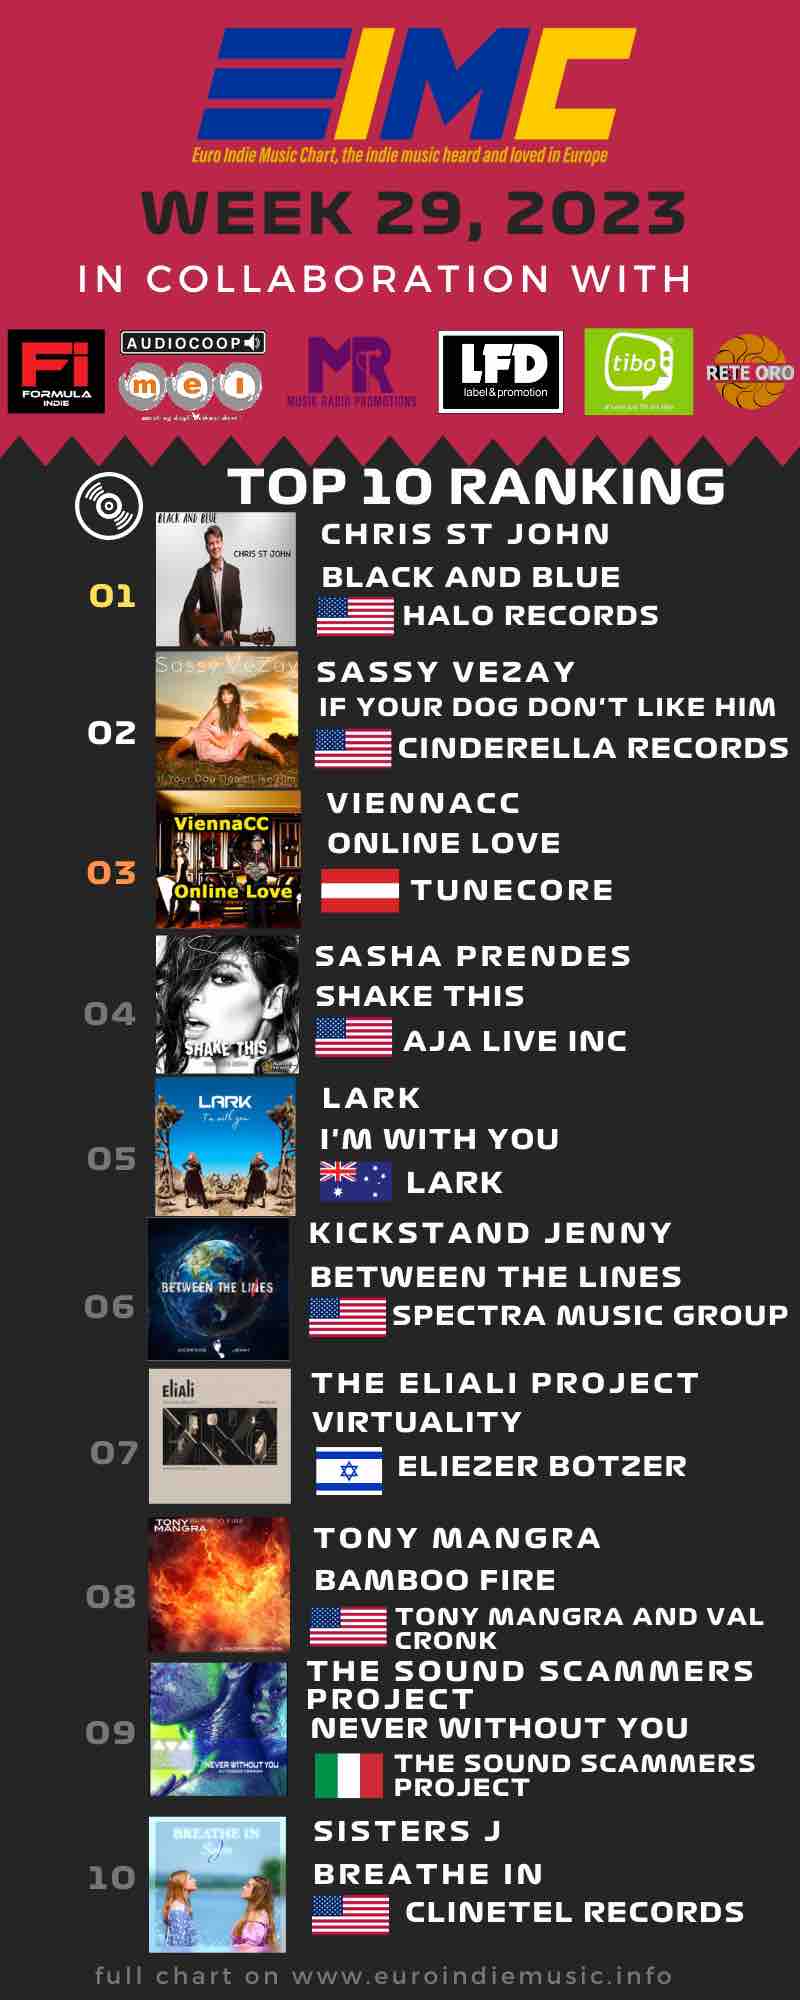 Nuova Euro Indie Music Chart: Questa settimana al primo posto della classifica troviamo Chris St. John